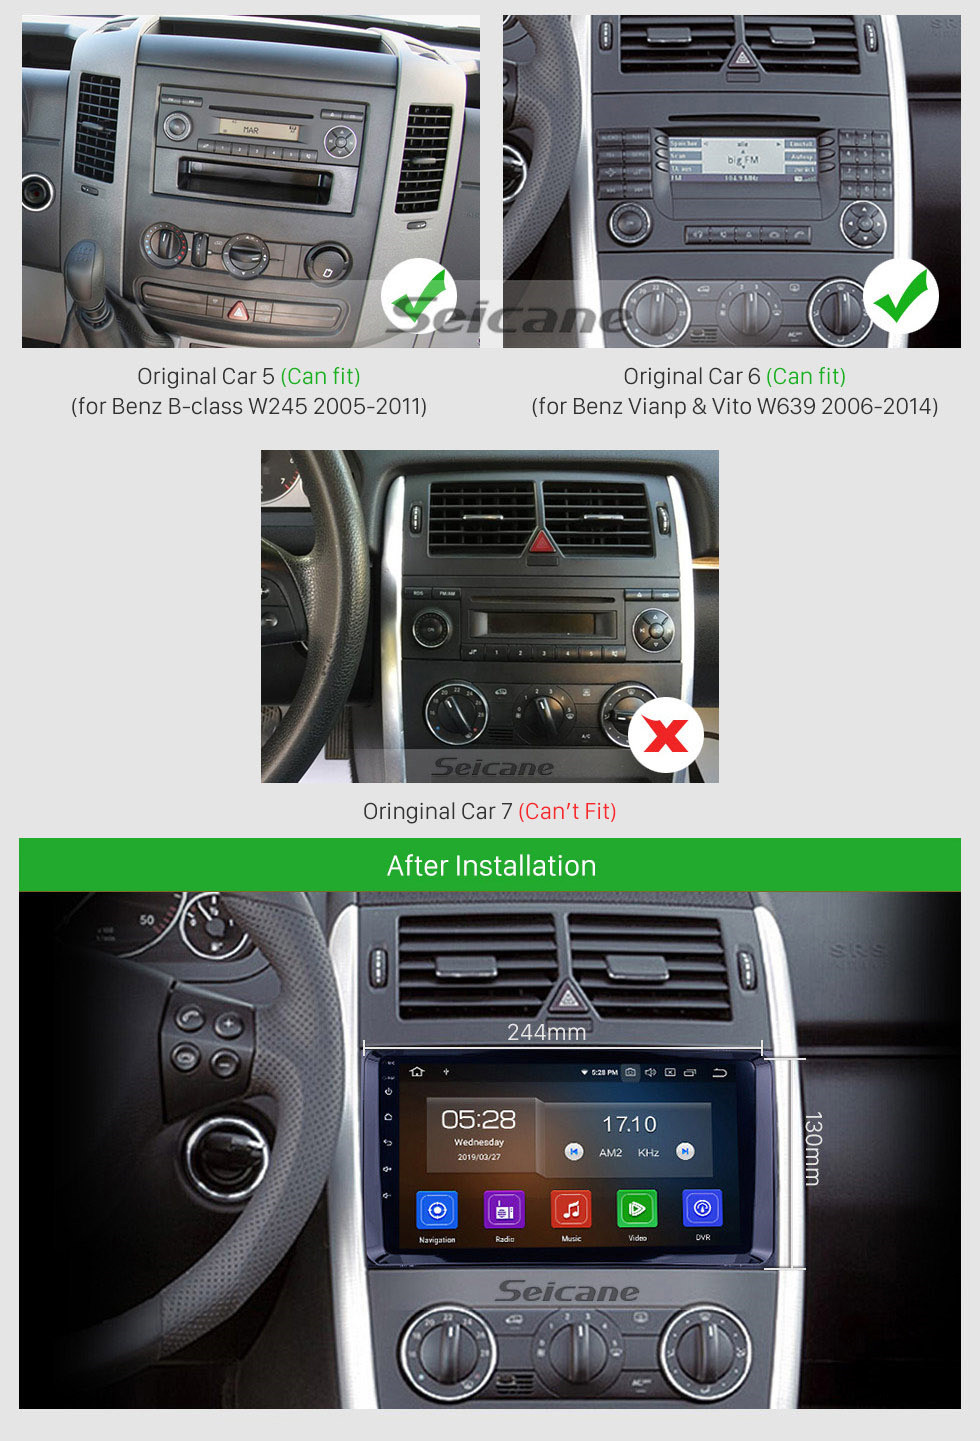 Seicane 9 pulgadas Android 12.0 HD 1024 * 600 Pantalla táctil para 2000-2015 VW Volkswagen Crafter Radio GPS Unidad principal con 3G WiFi Reproductor de DVD Bluetooth Música AUX Cámara retrovisora OBD2 Mirror Link